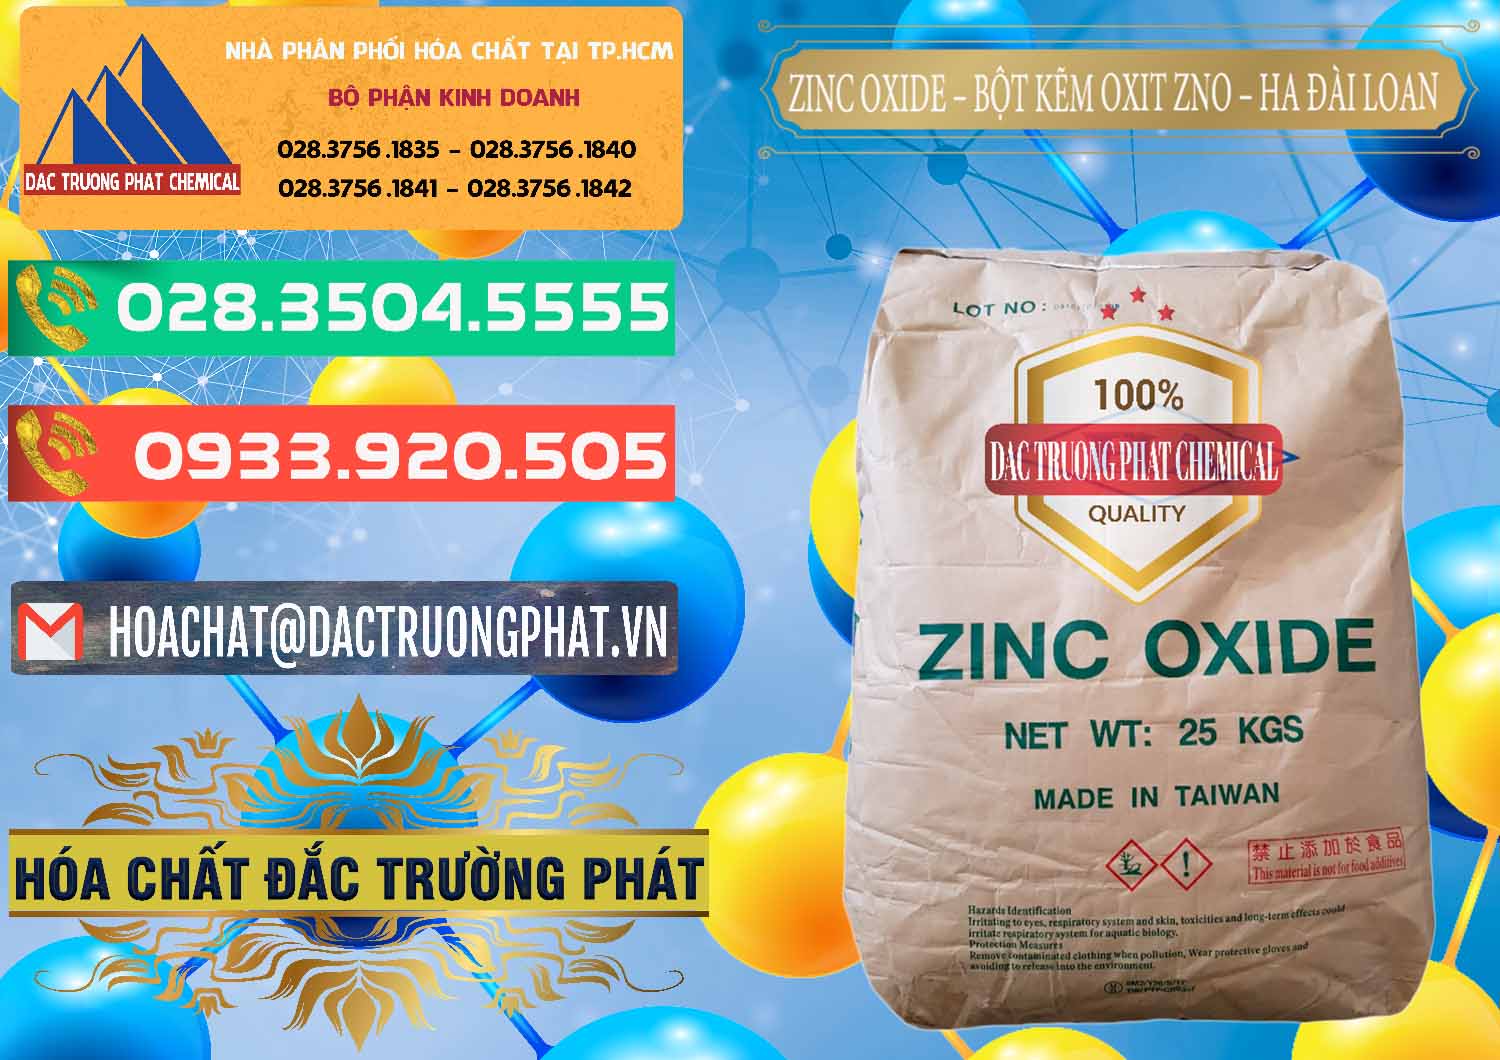 Cty chuyên bán & phân phối Zinc Oxide - Bột Kẽm Oxit ZNO HA Đài Loan Taiwan - 0180 - Cty chuyên bán & phân phối hóa chất tại TP.HCM - congtyhoachat.com.vn